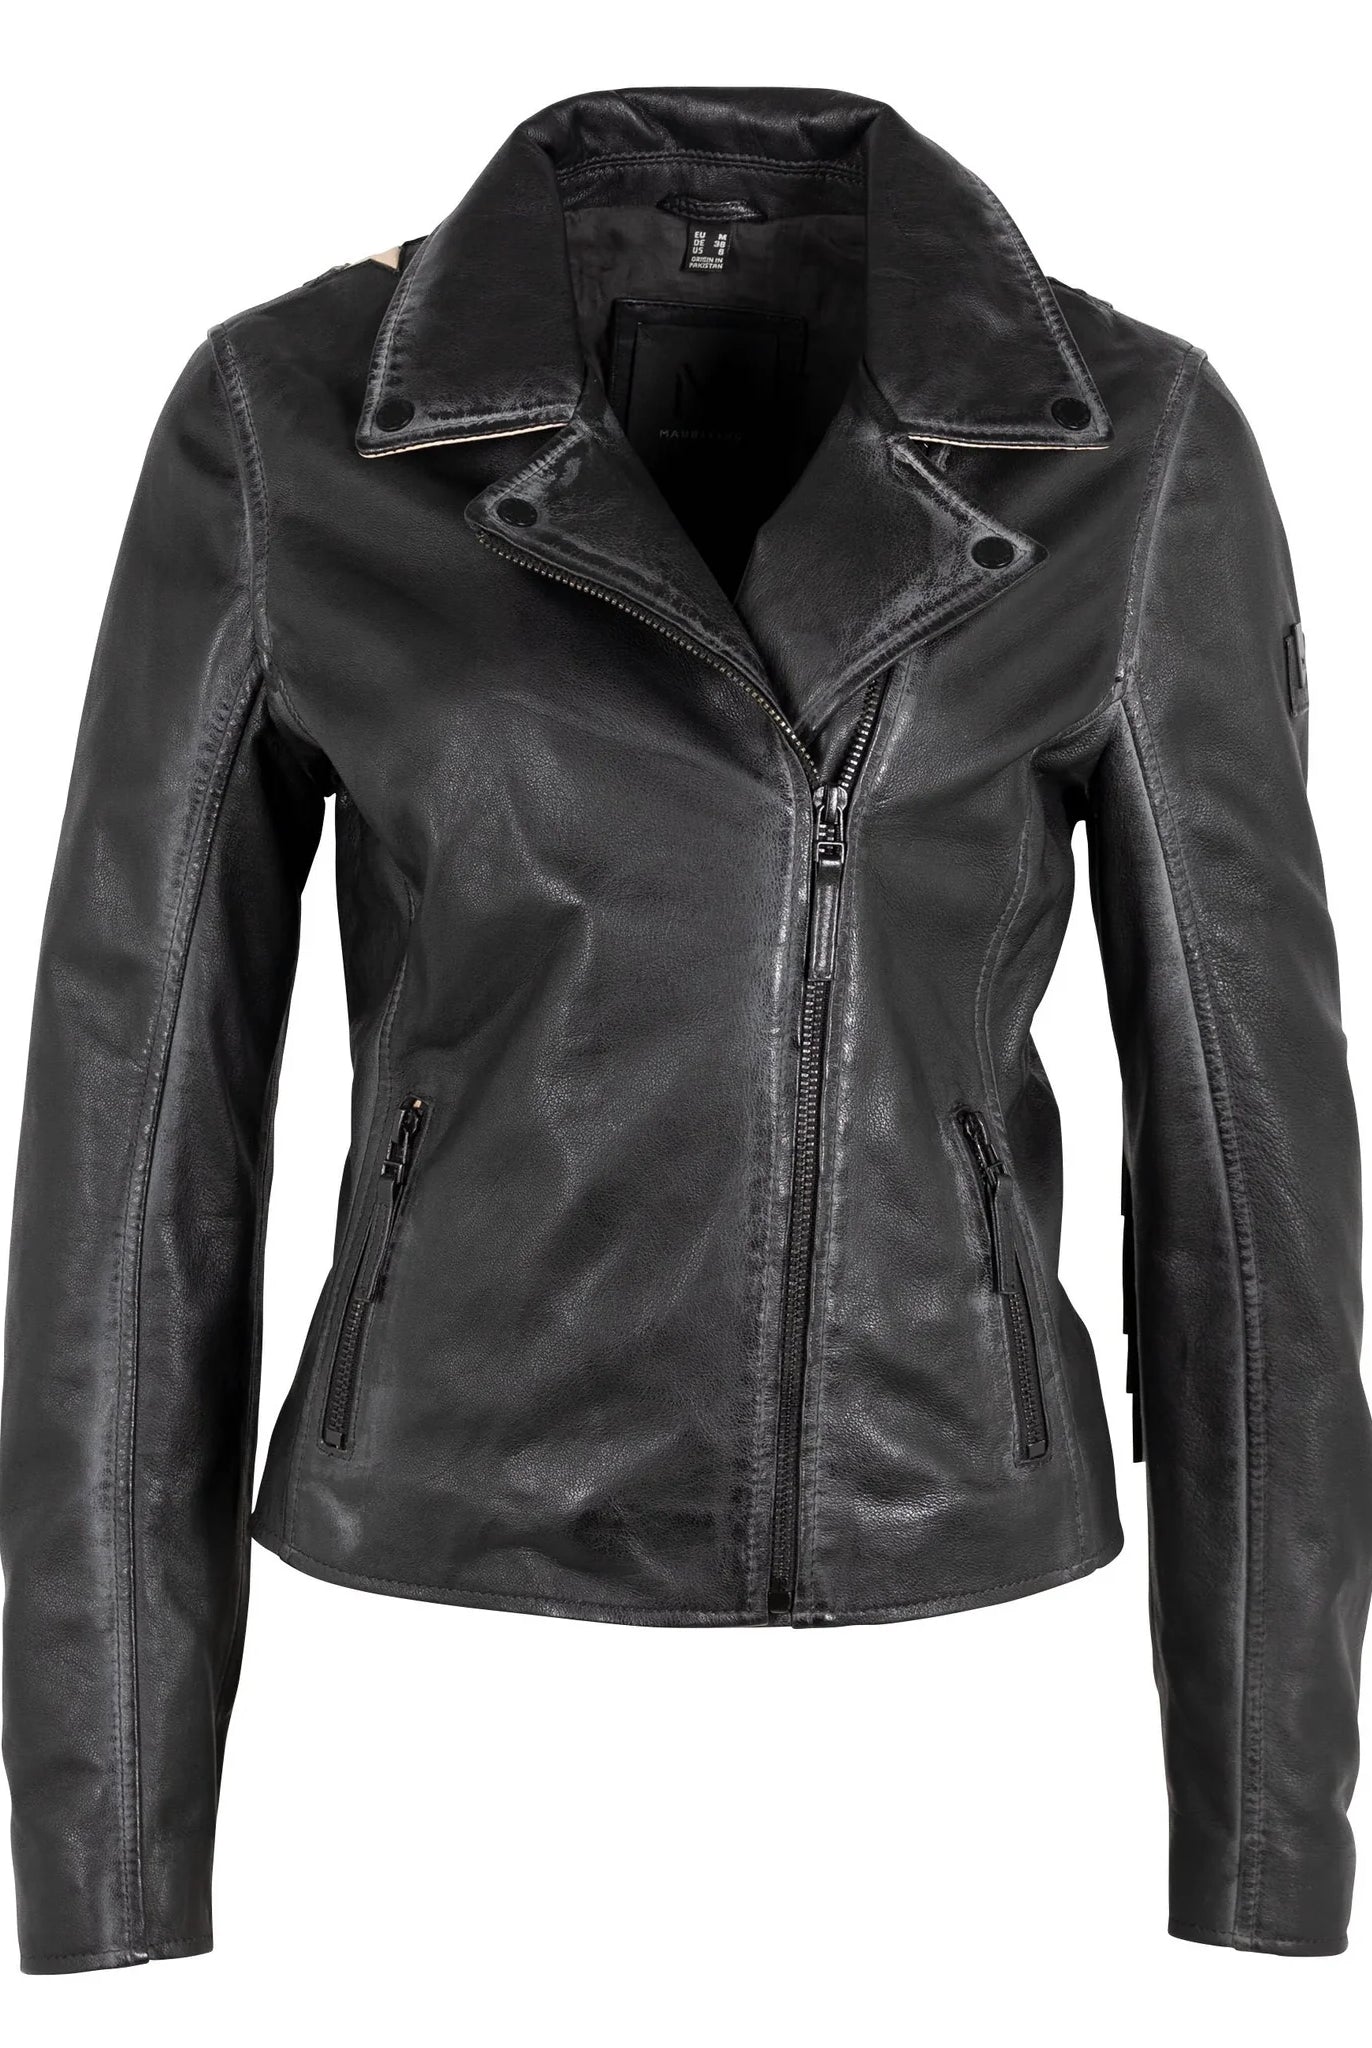 Mauritius-Chrissy-Black-Fringe-Leather-Moto-Jacket